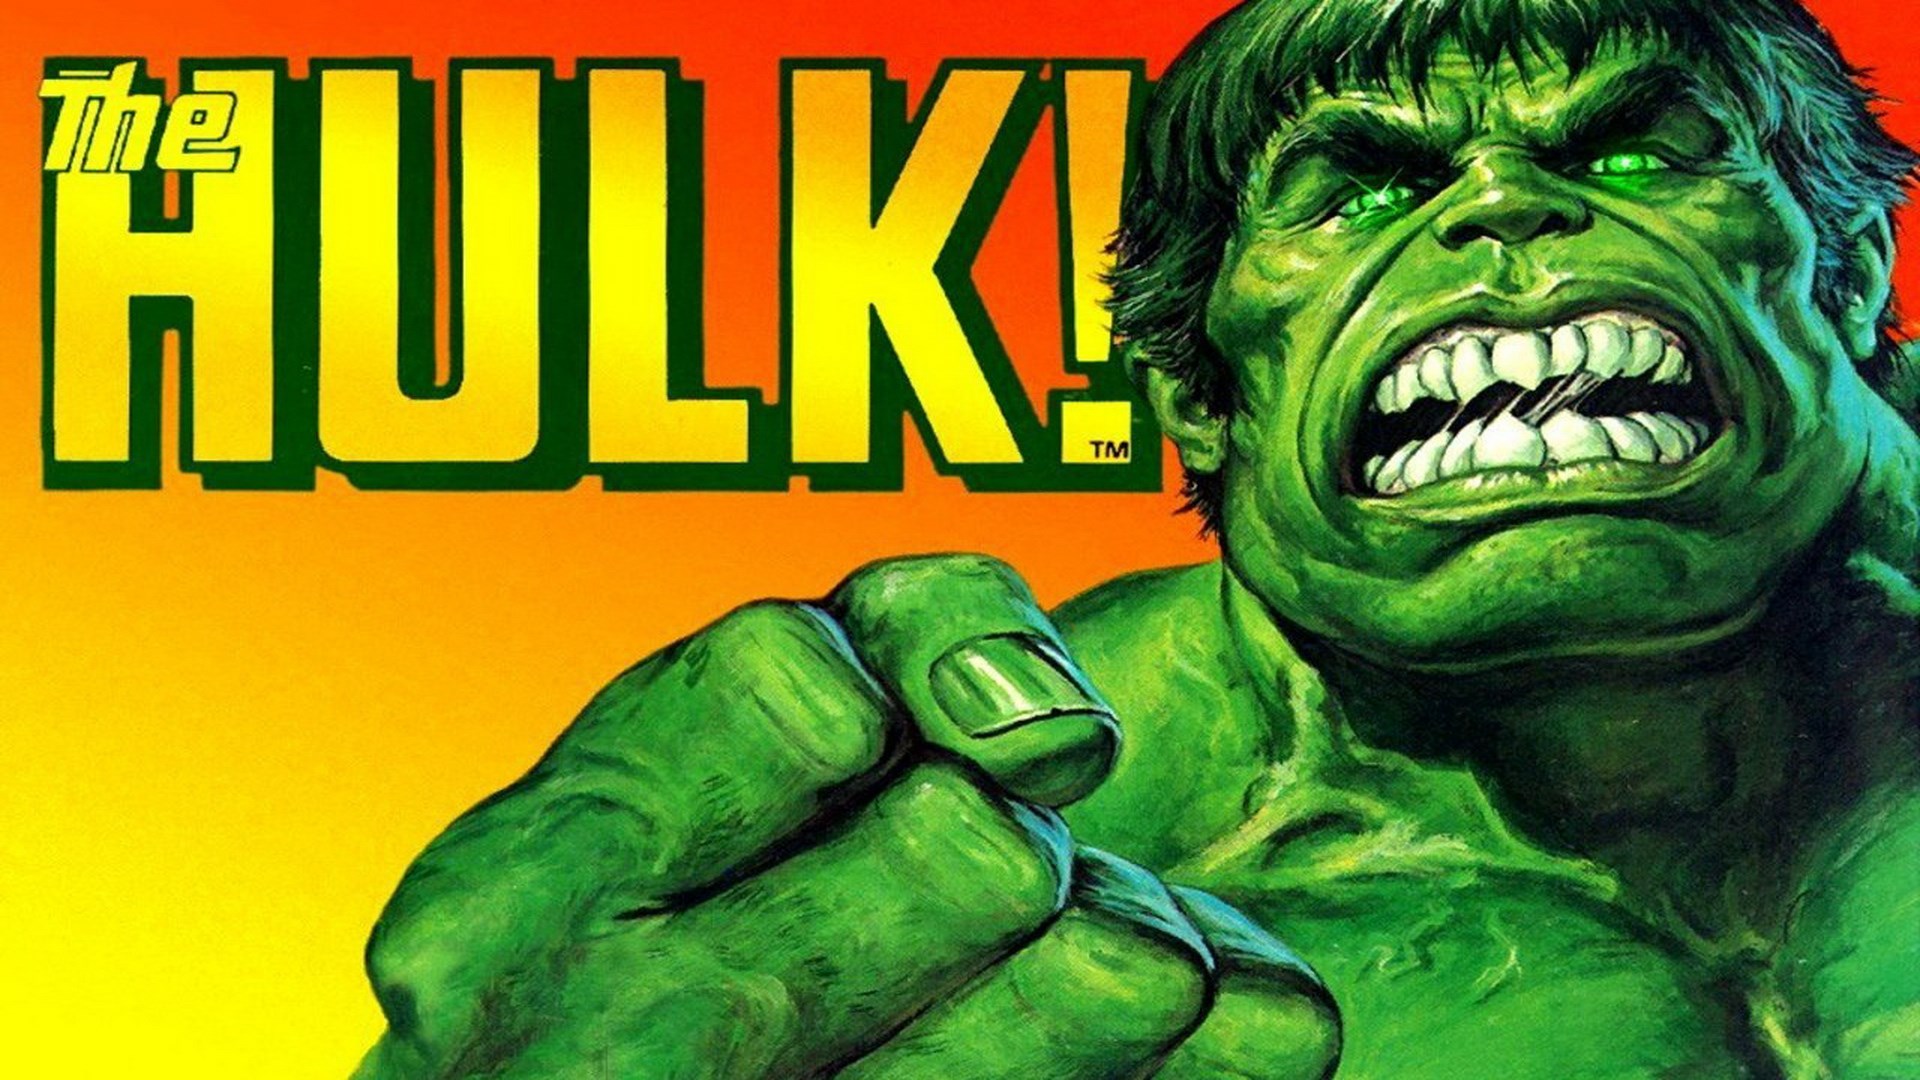 Mr Bean Hulk , HD Wallpaper & Backgrounds